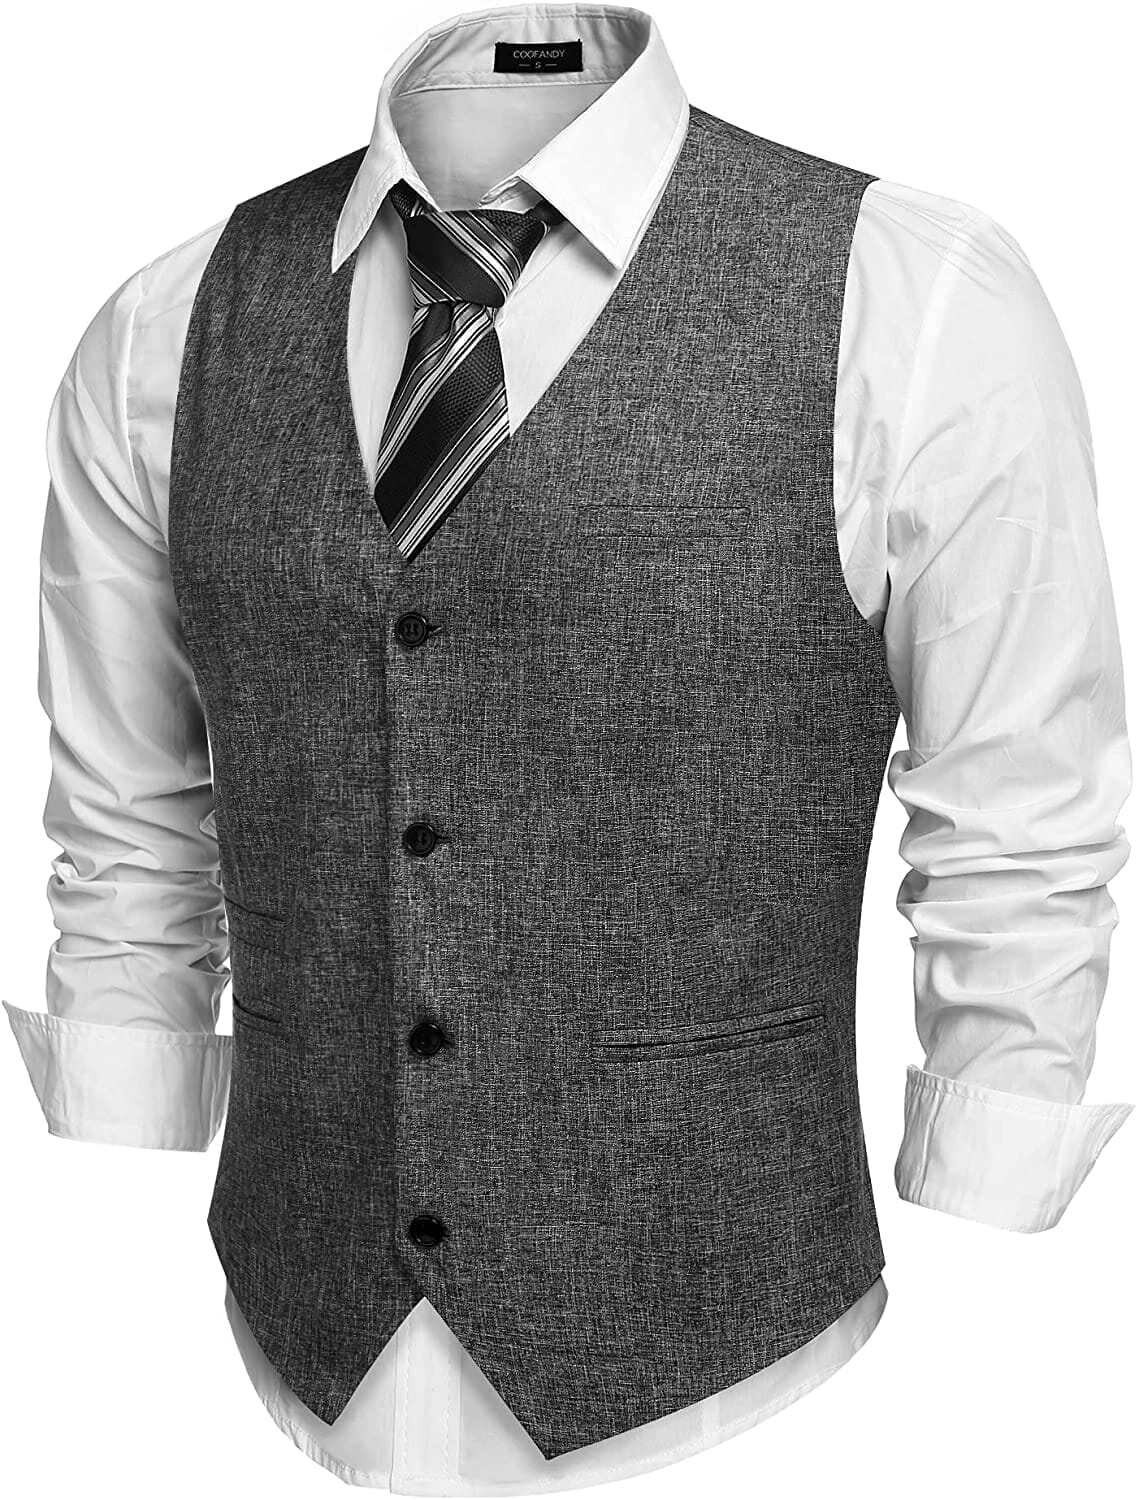 Coofandy Waistcoat Business Vests (US Only) Vest coofandy Grey S 